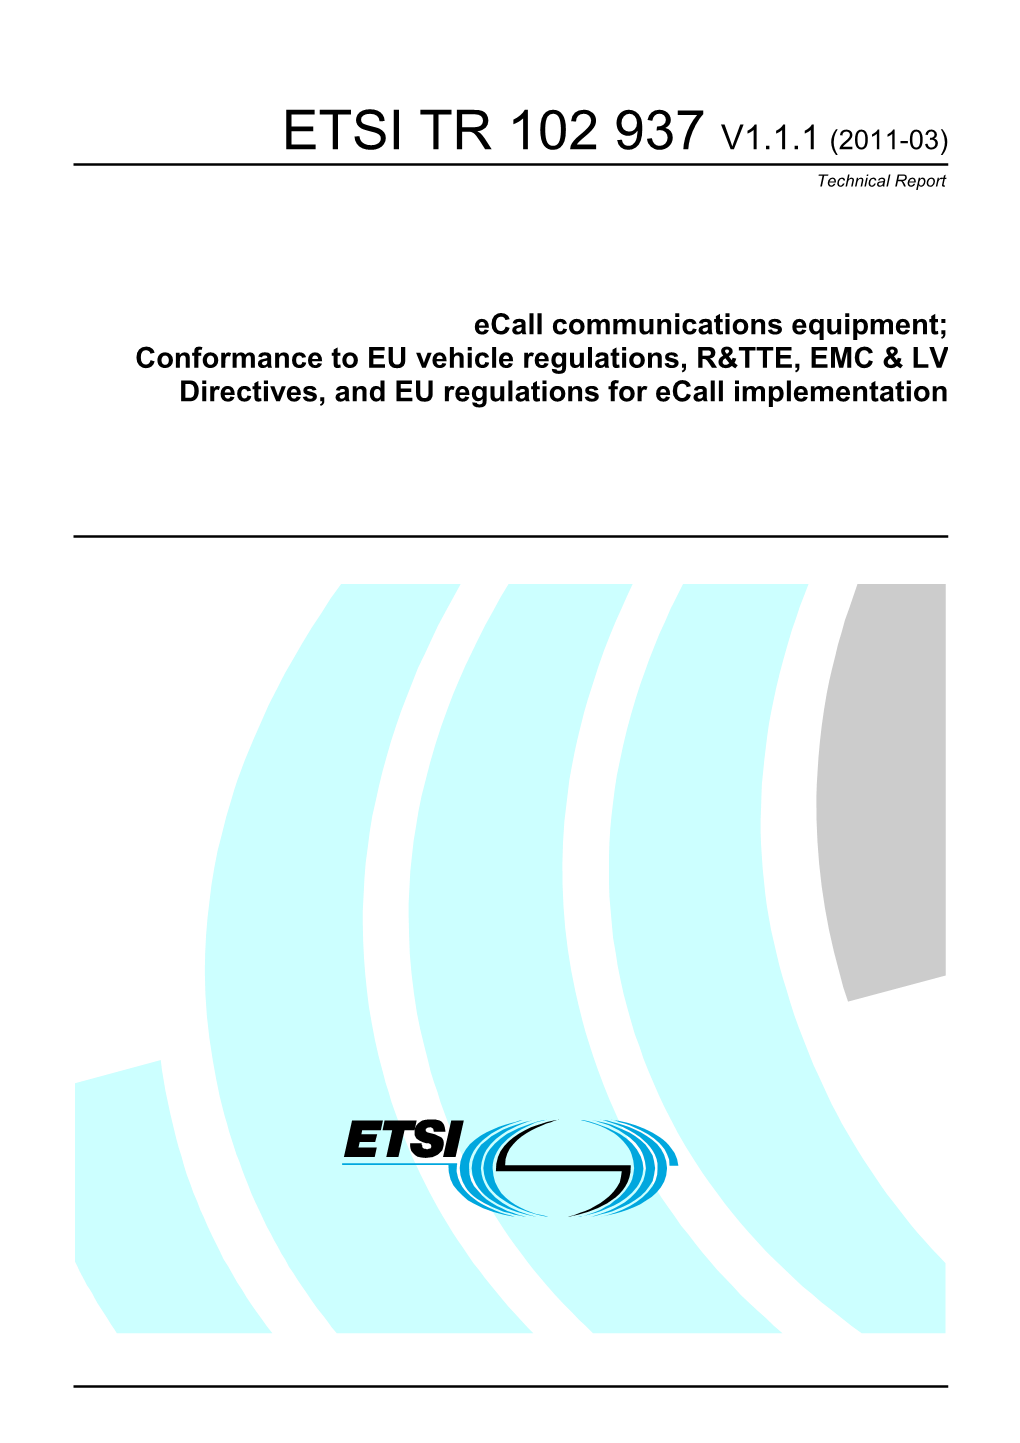 ETSI TR 102 937 V1.1.1 (2011-03) Technical Report